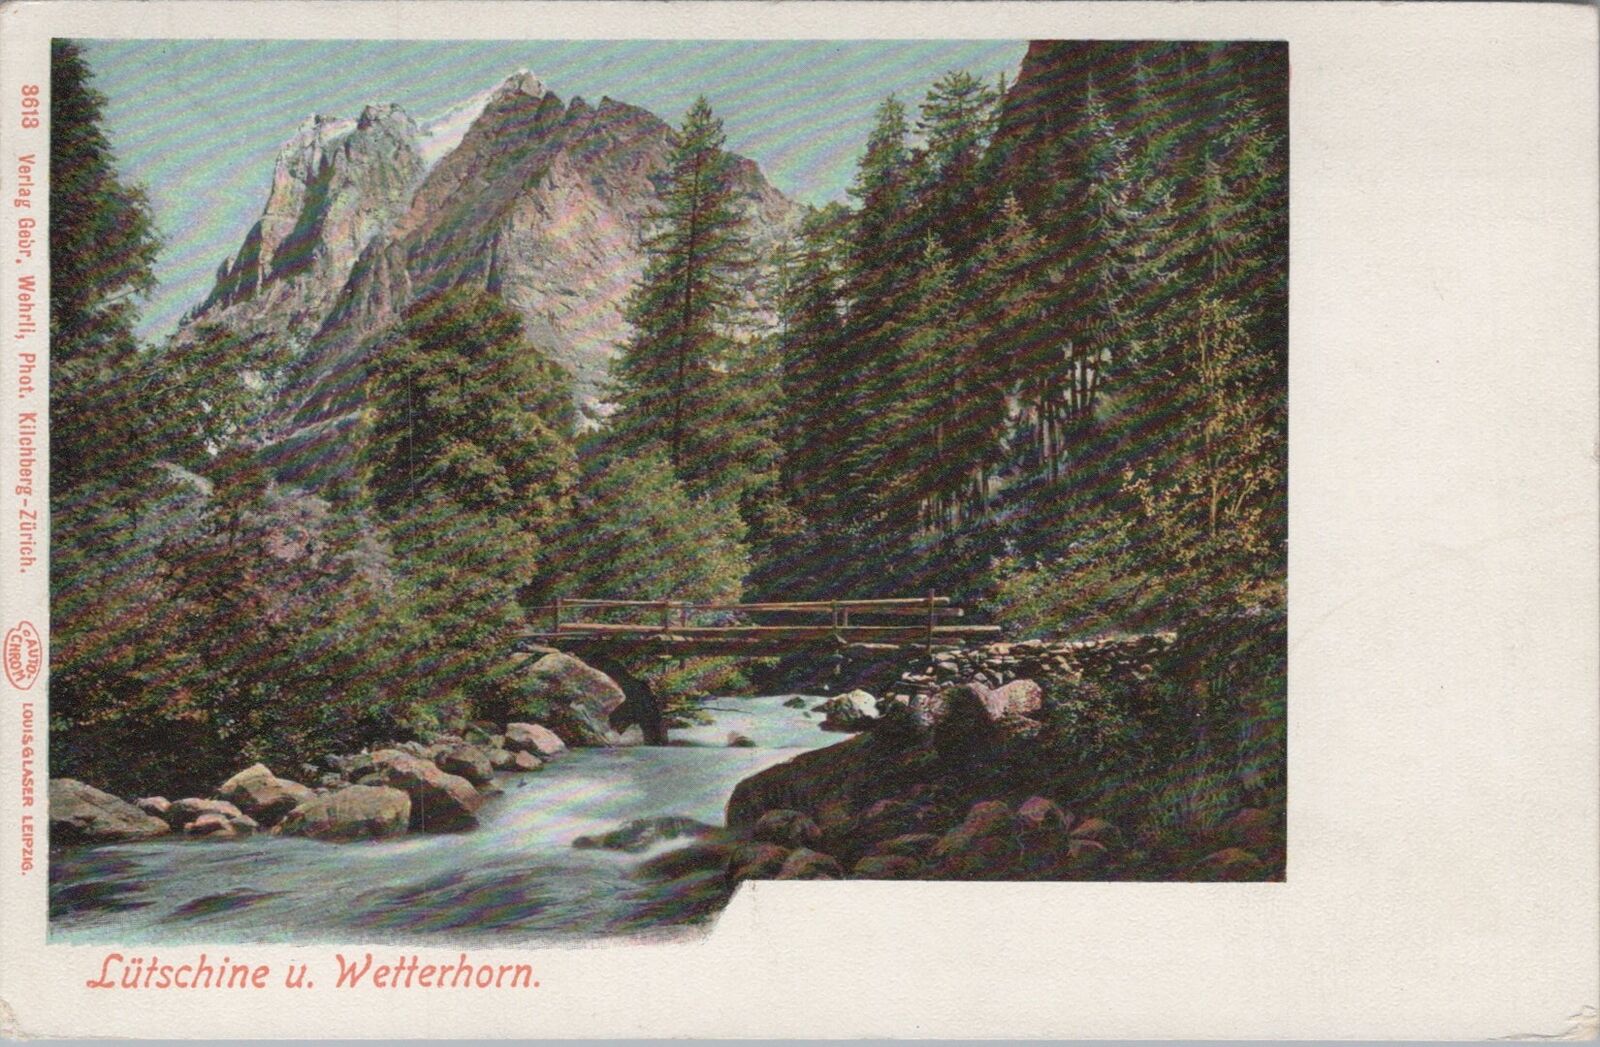 Lütschine and Wetterhorn View, Zurich, Switzerland Vintage Postcard